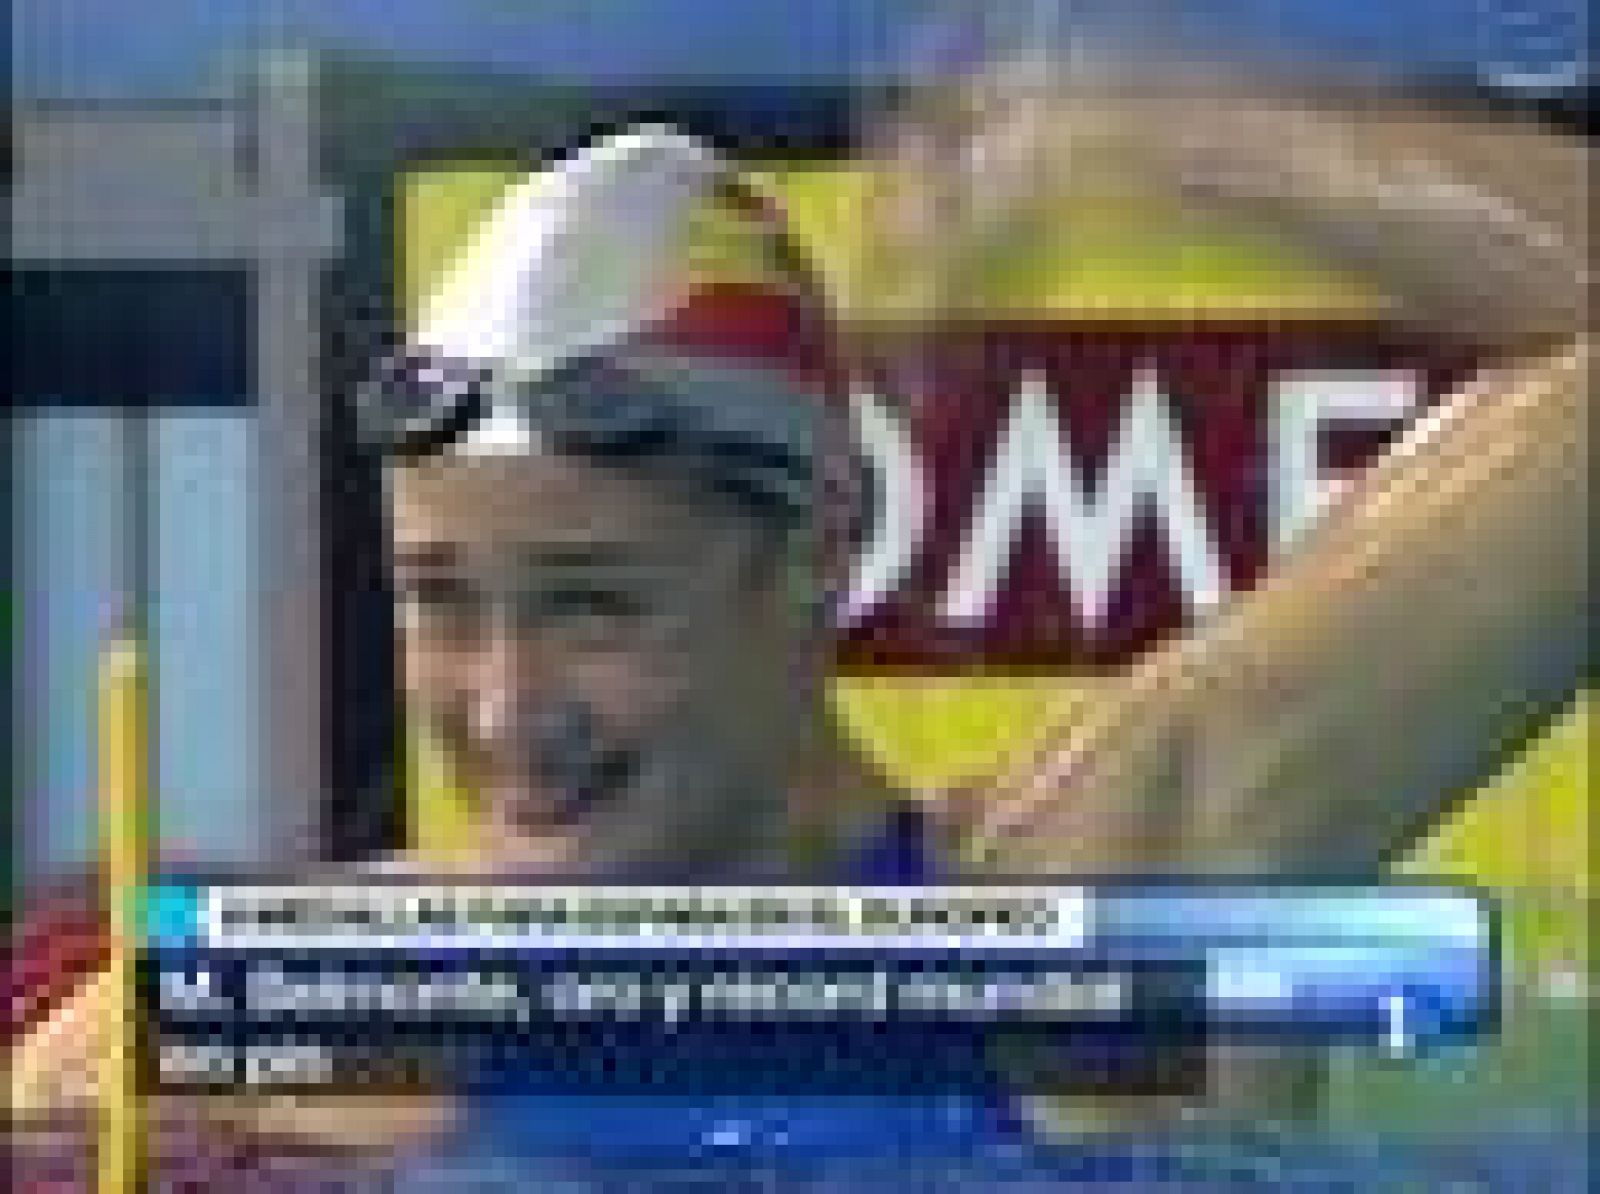 La nadadora española Mireia Belmonte se colgó la medalla de oro de los 400 metros estilos con un nuevo récord del mundo con un tiempo de 4:25.06, en los Campeonatos de Europa de piscina corta que terminaron con una plata para Aschwin Wildeboer y un bronce para Alan Cabello.